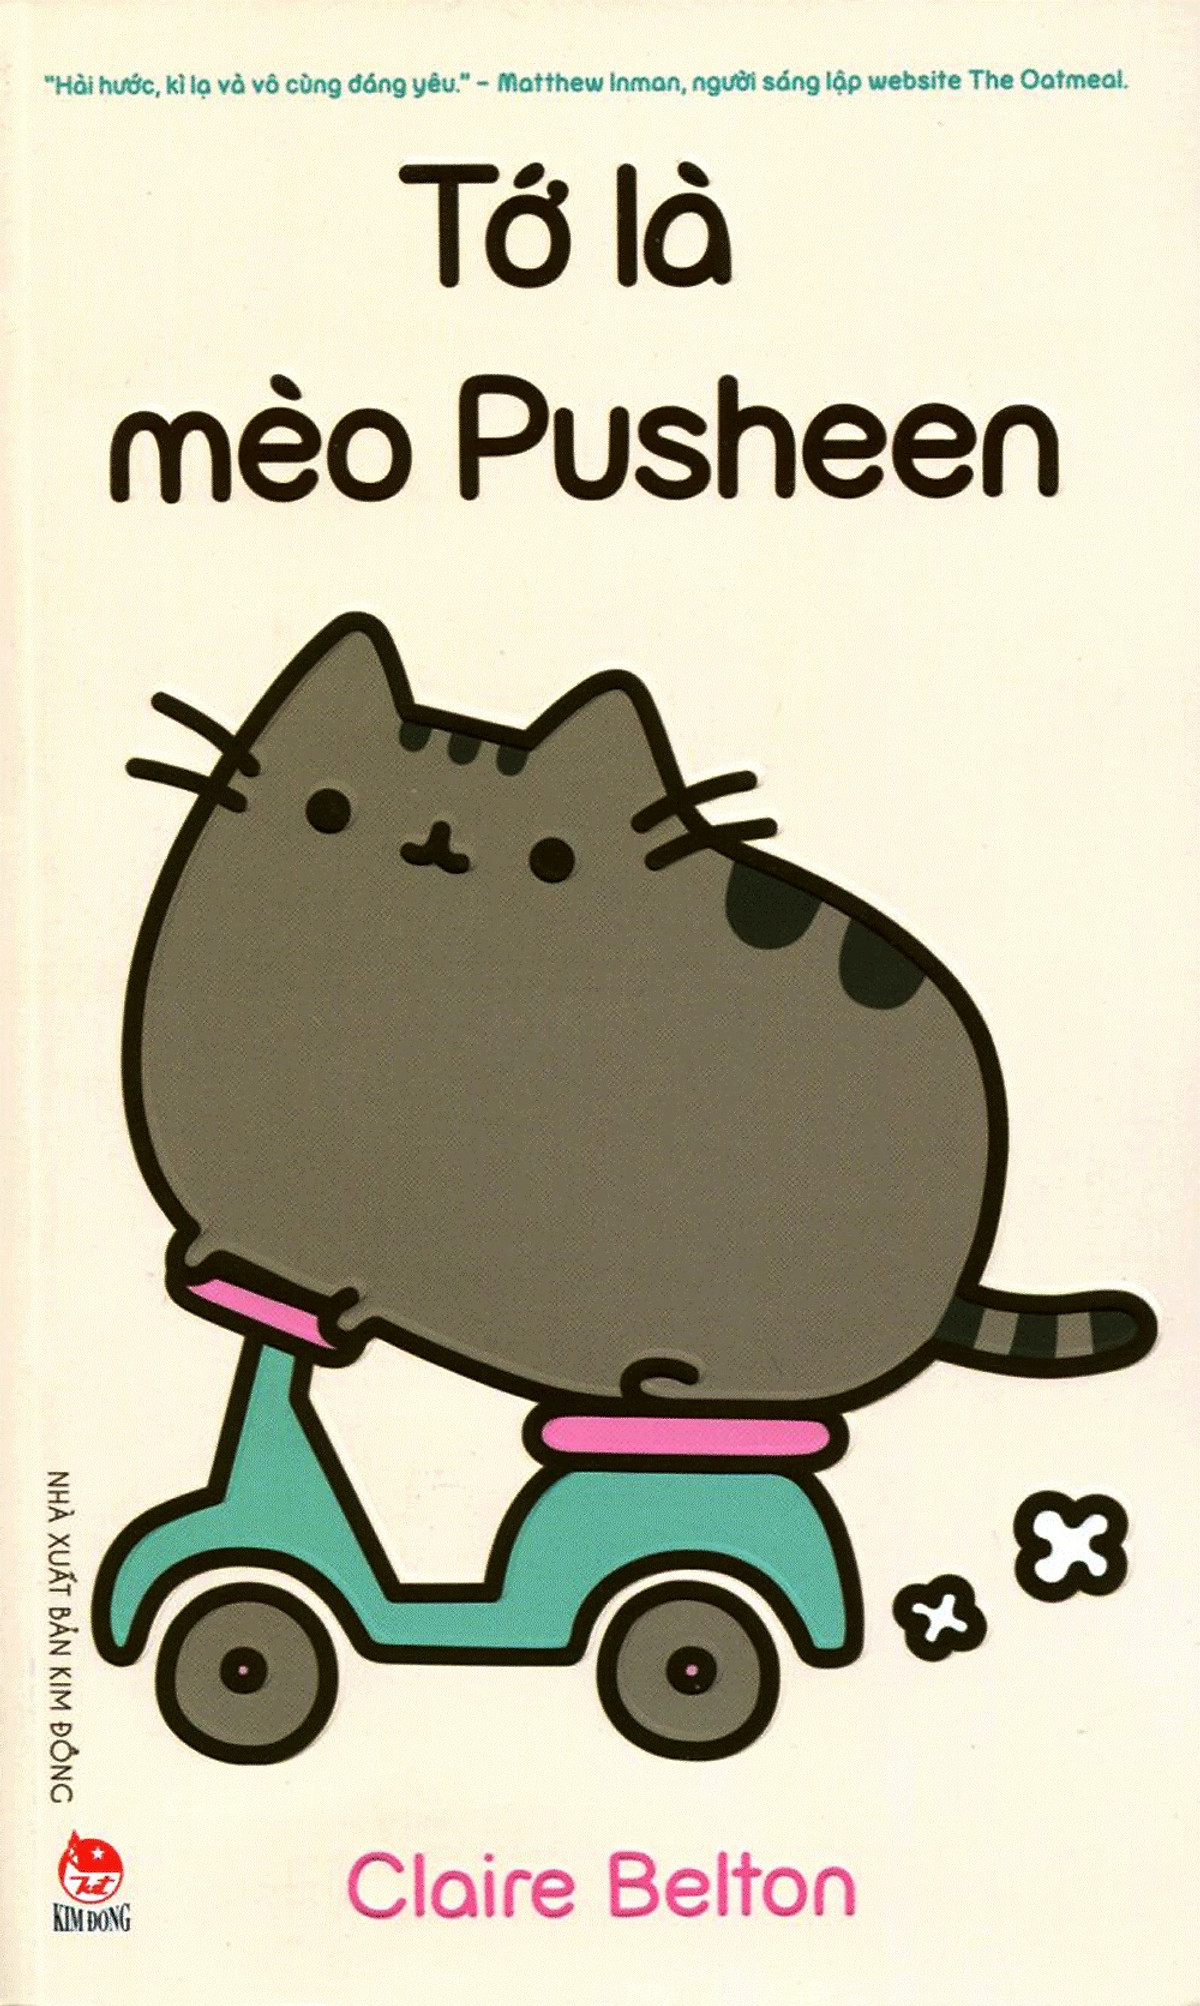 Mua Tớ Là Mèo Pusheen: Bạn có thích những đồ vật ngộ nghĩnh và đáng yêu? Bạn có yêu mèo Pusheen? Nếu vậy, chắc chắn bạn sẽ thích bộ truyện tranh Tớ Là Mèo Pusheen. Được tạo ra dựa trên nhân vật phổ biến của internet, Tớ Là Mèo Pusheen không chỉ là một bộ truyện tranh đáng yêu, mà còn mang đến cho bạn niềm vui và tiếng cười.